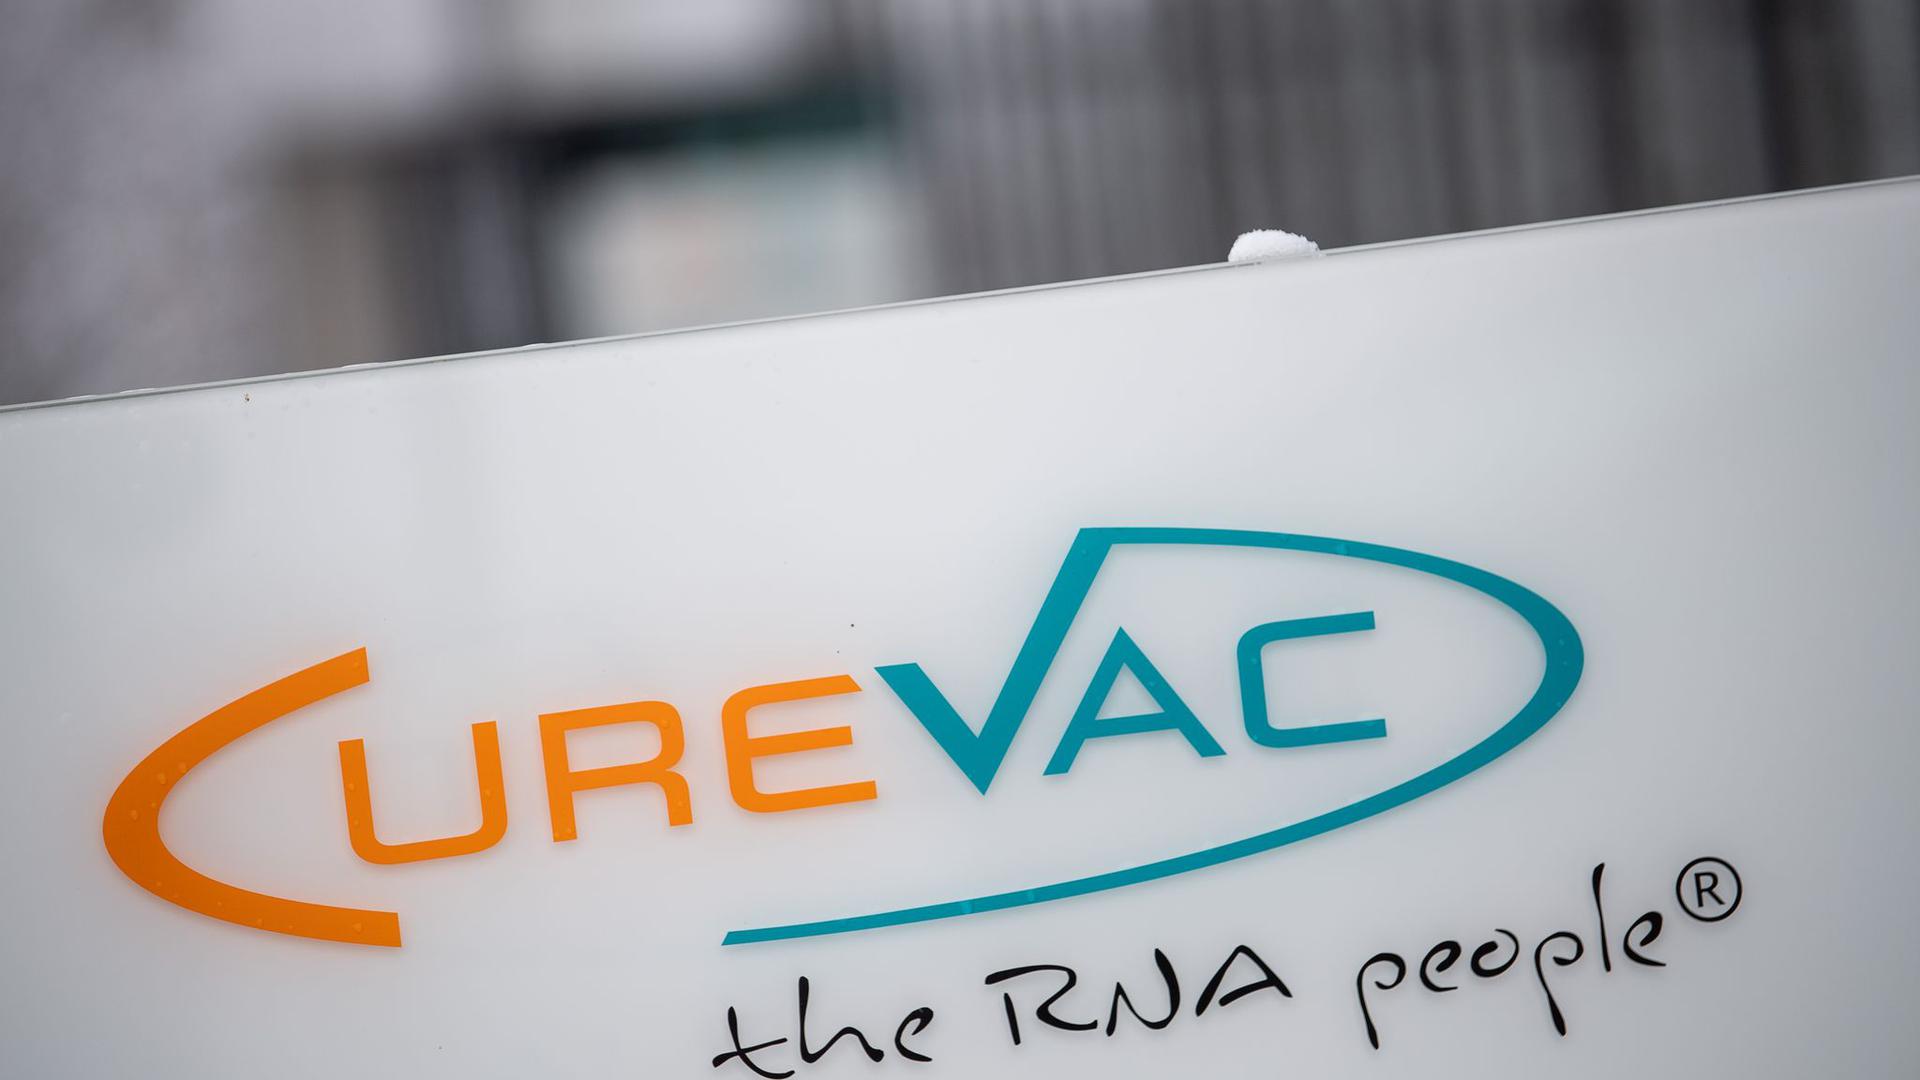 Curevac-Studie: Hauseigener Impfstoff schützt offenbar Lunge komplett